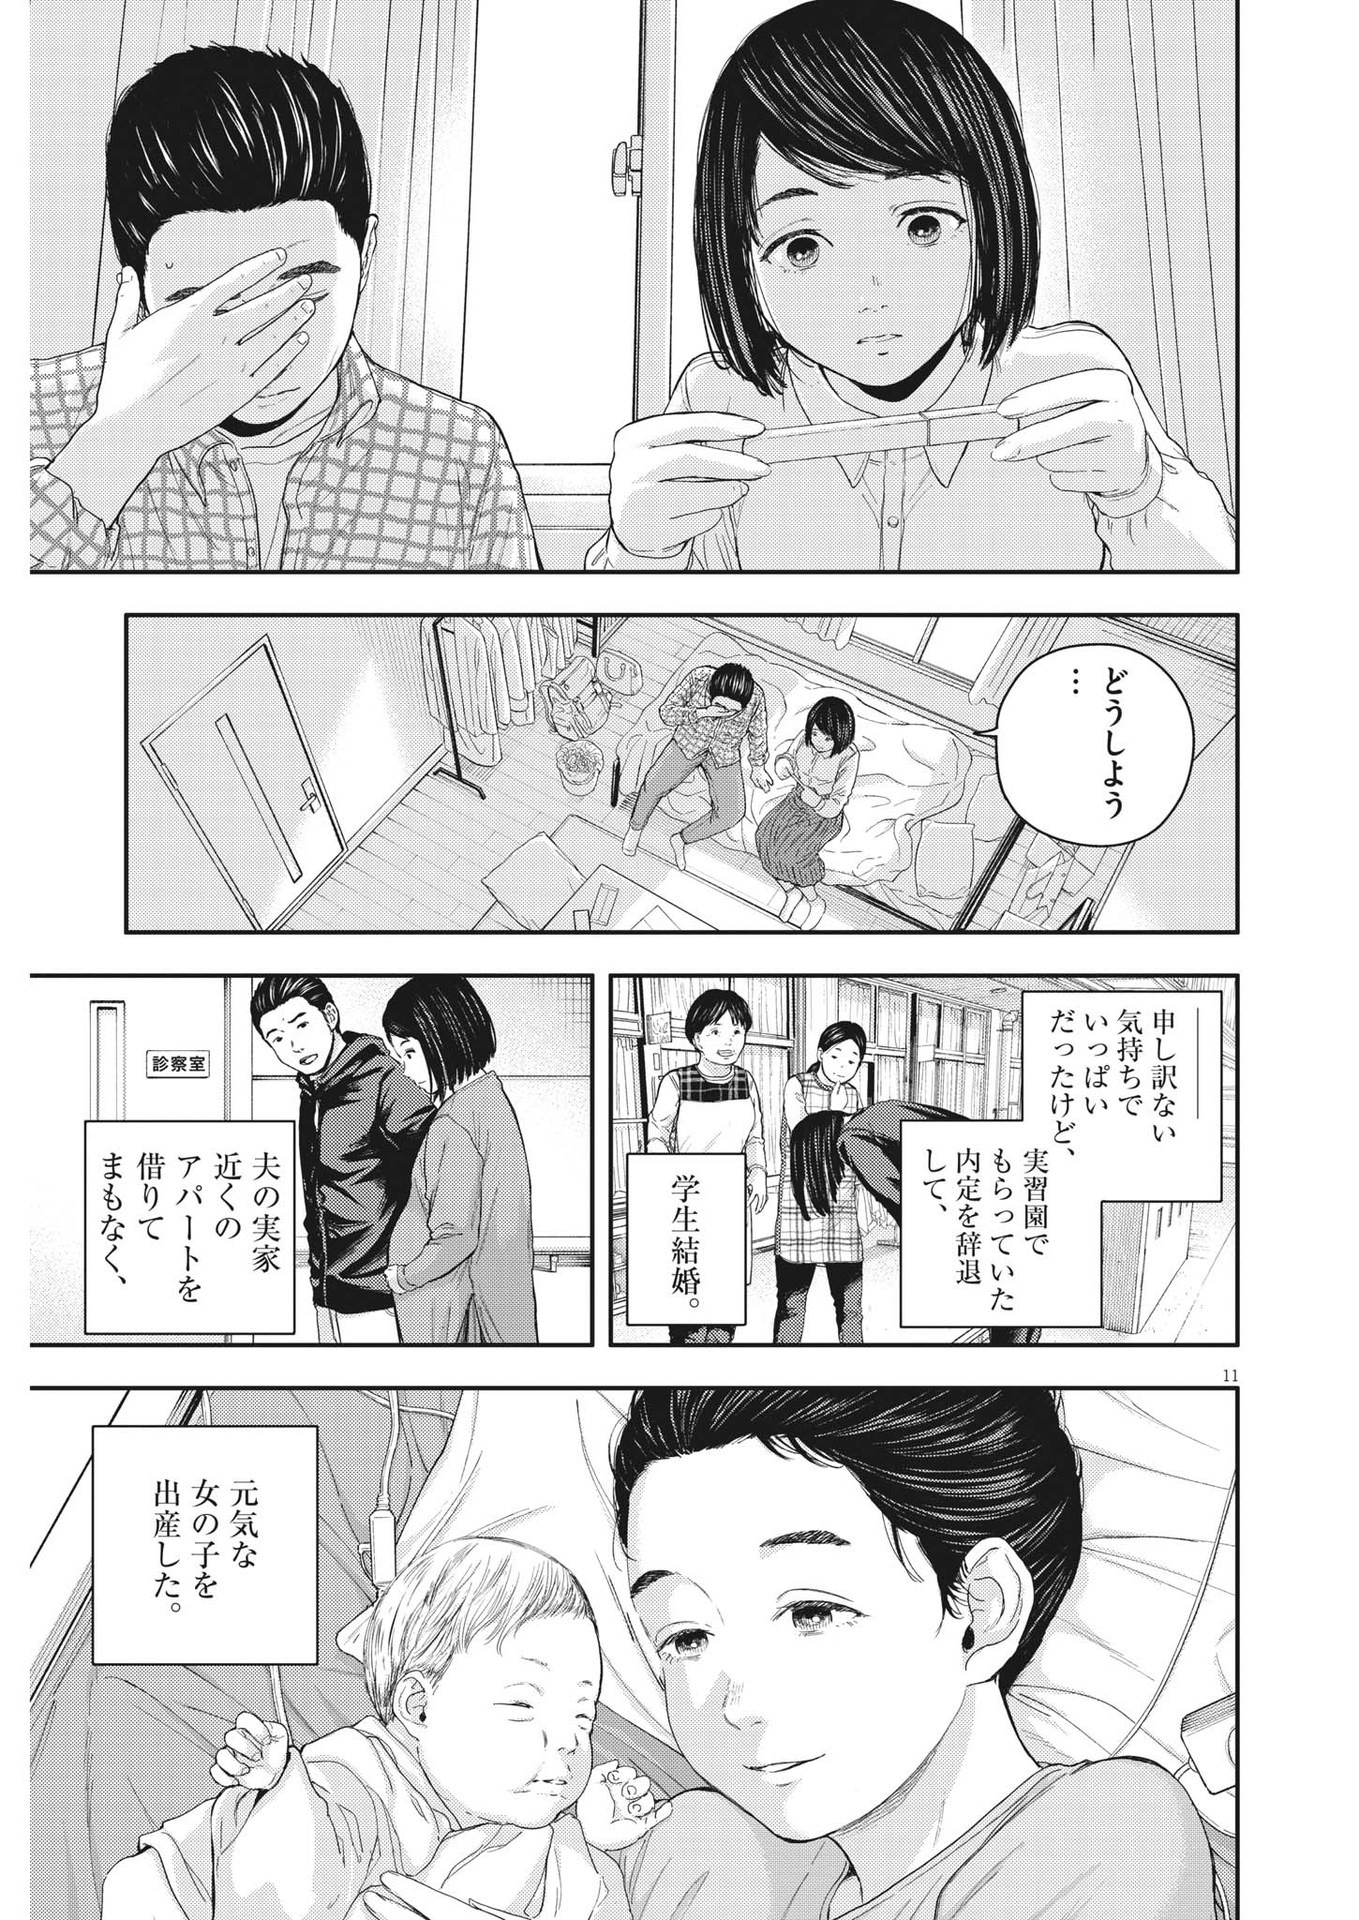 Yumenashi-sensei no Shinroshidou - Chapter 21 - Page 11